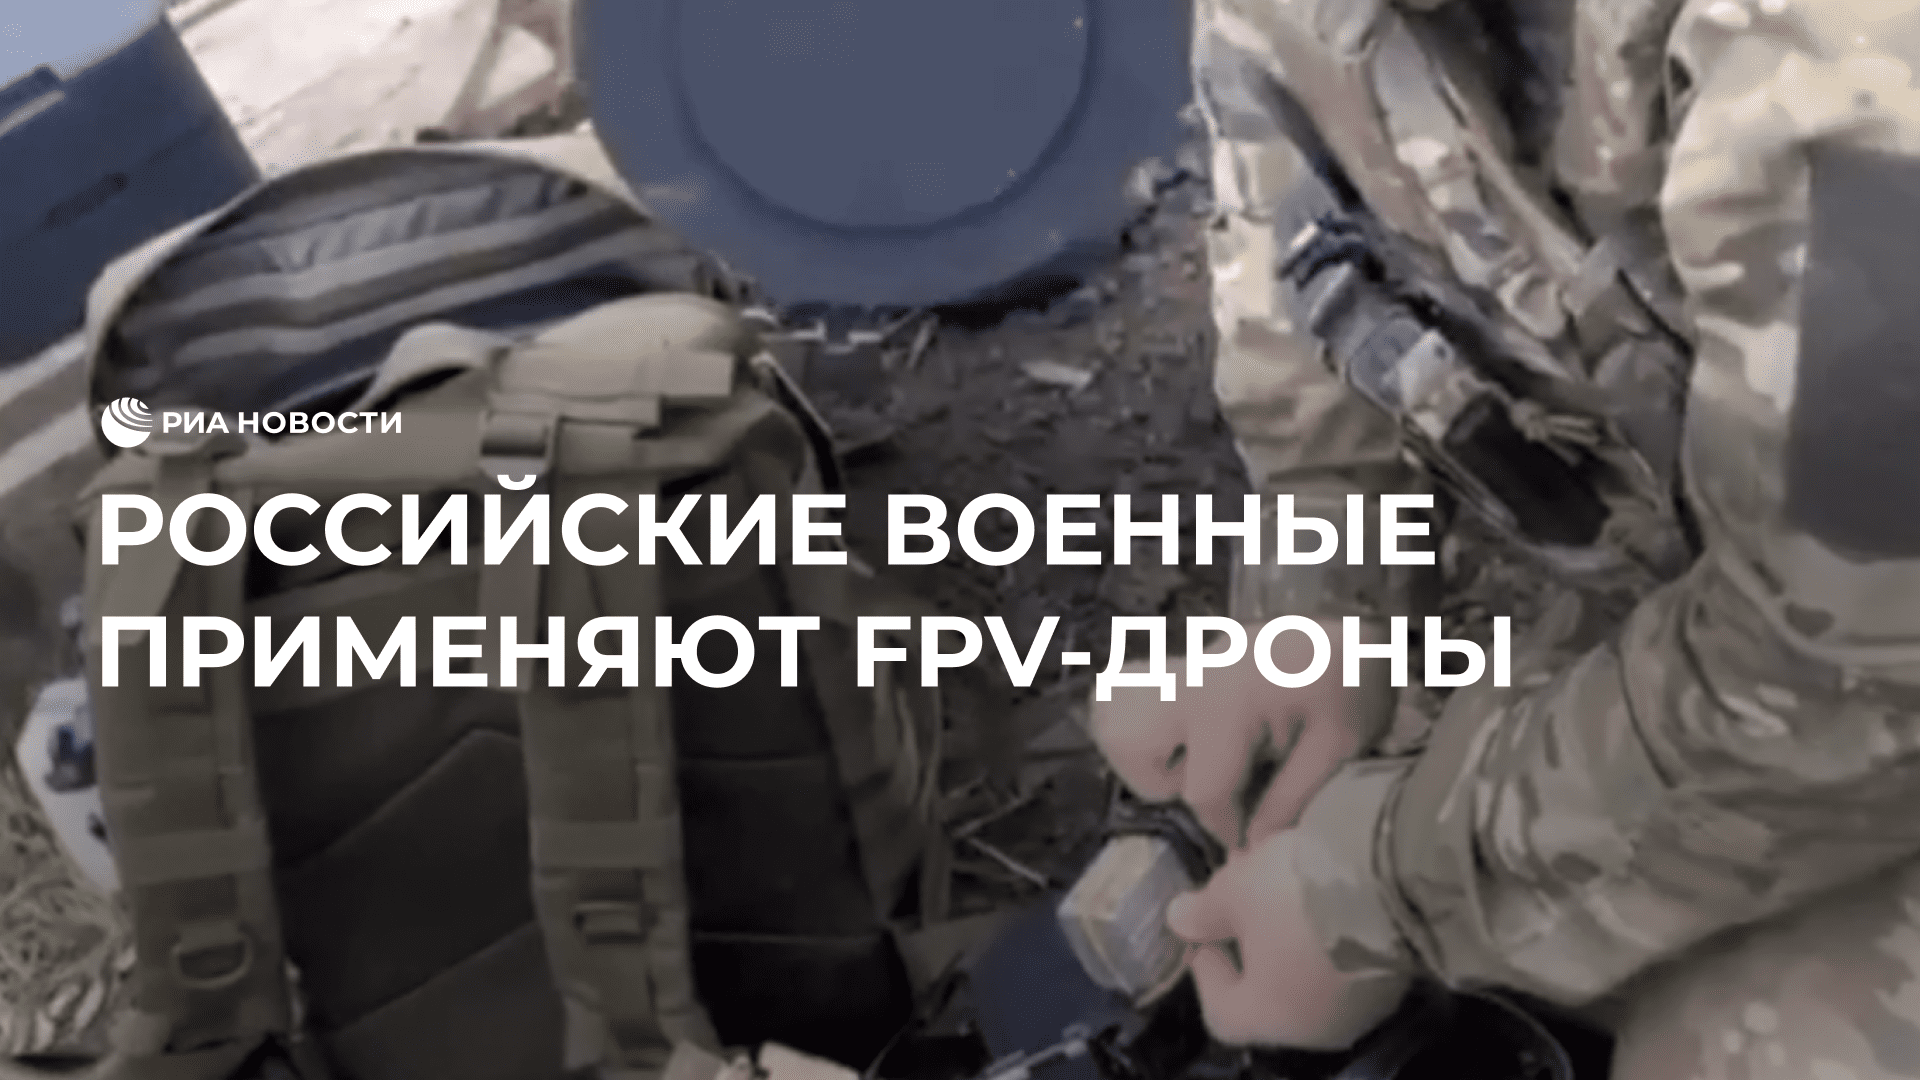 Российские военные на Запорожском направлении применяют FPV-дроны